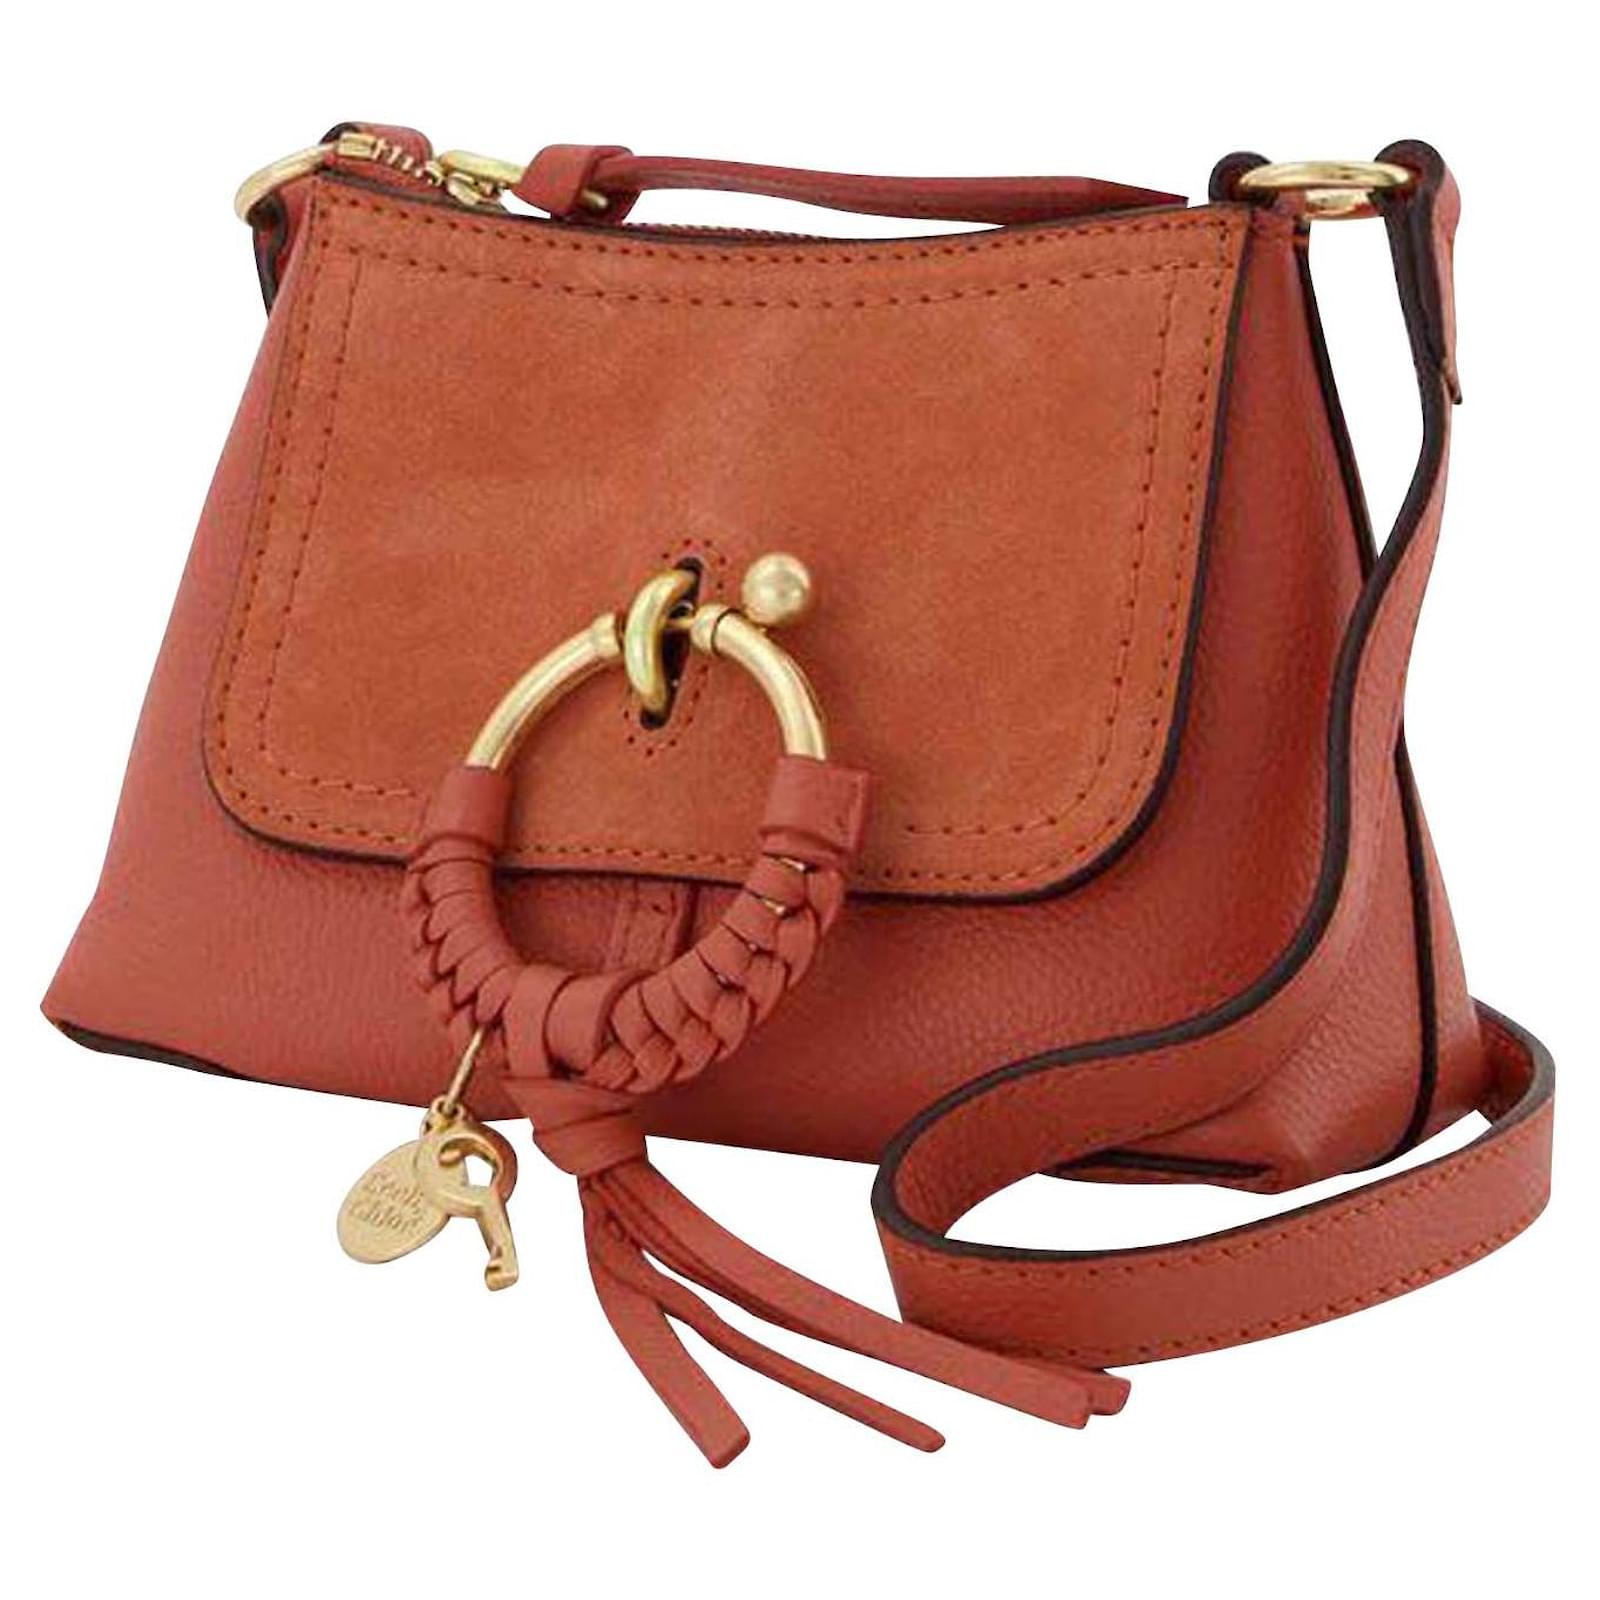 Joan Mini Hobo Bag - See By Chloe - Tan Apricot - Leather